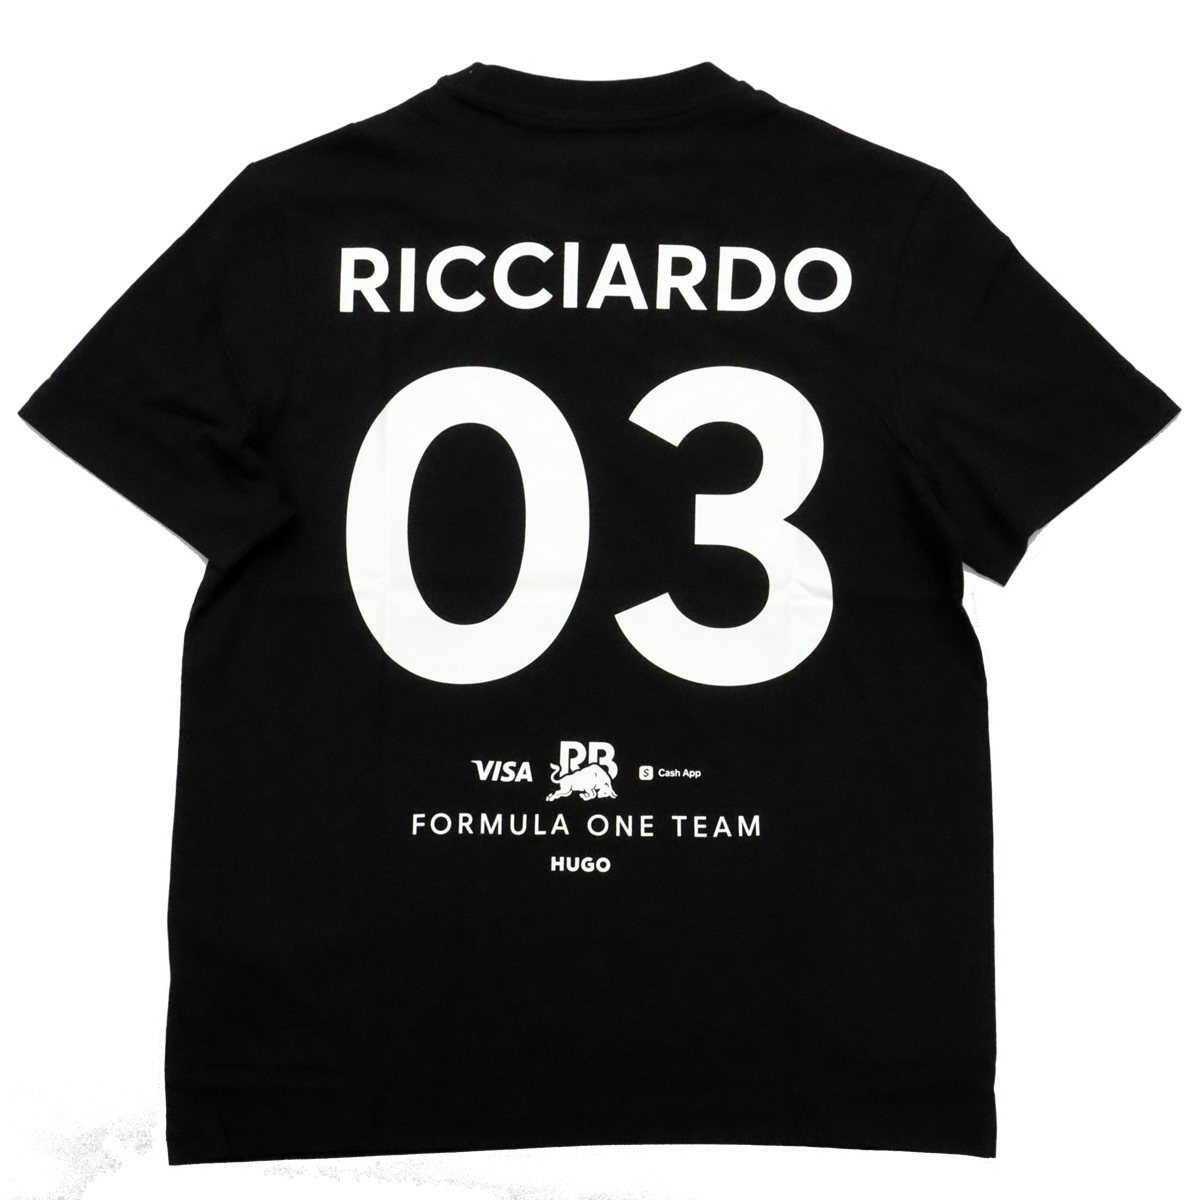 2024 ビザ キャッシュアップ RB F1 チーム #3 ダニエル リカルド Tシャツ / ブラック画像